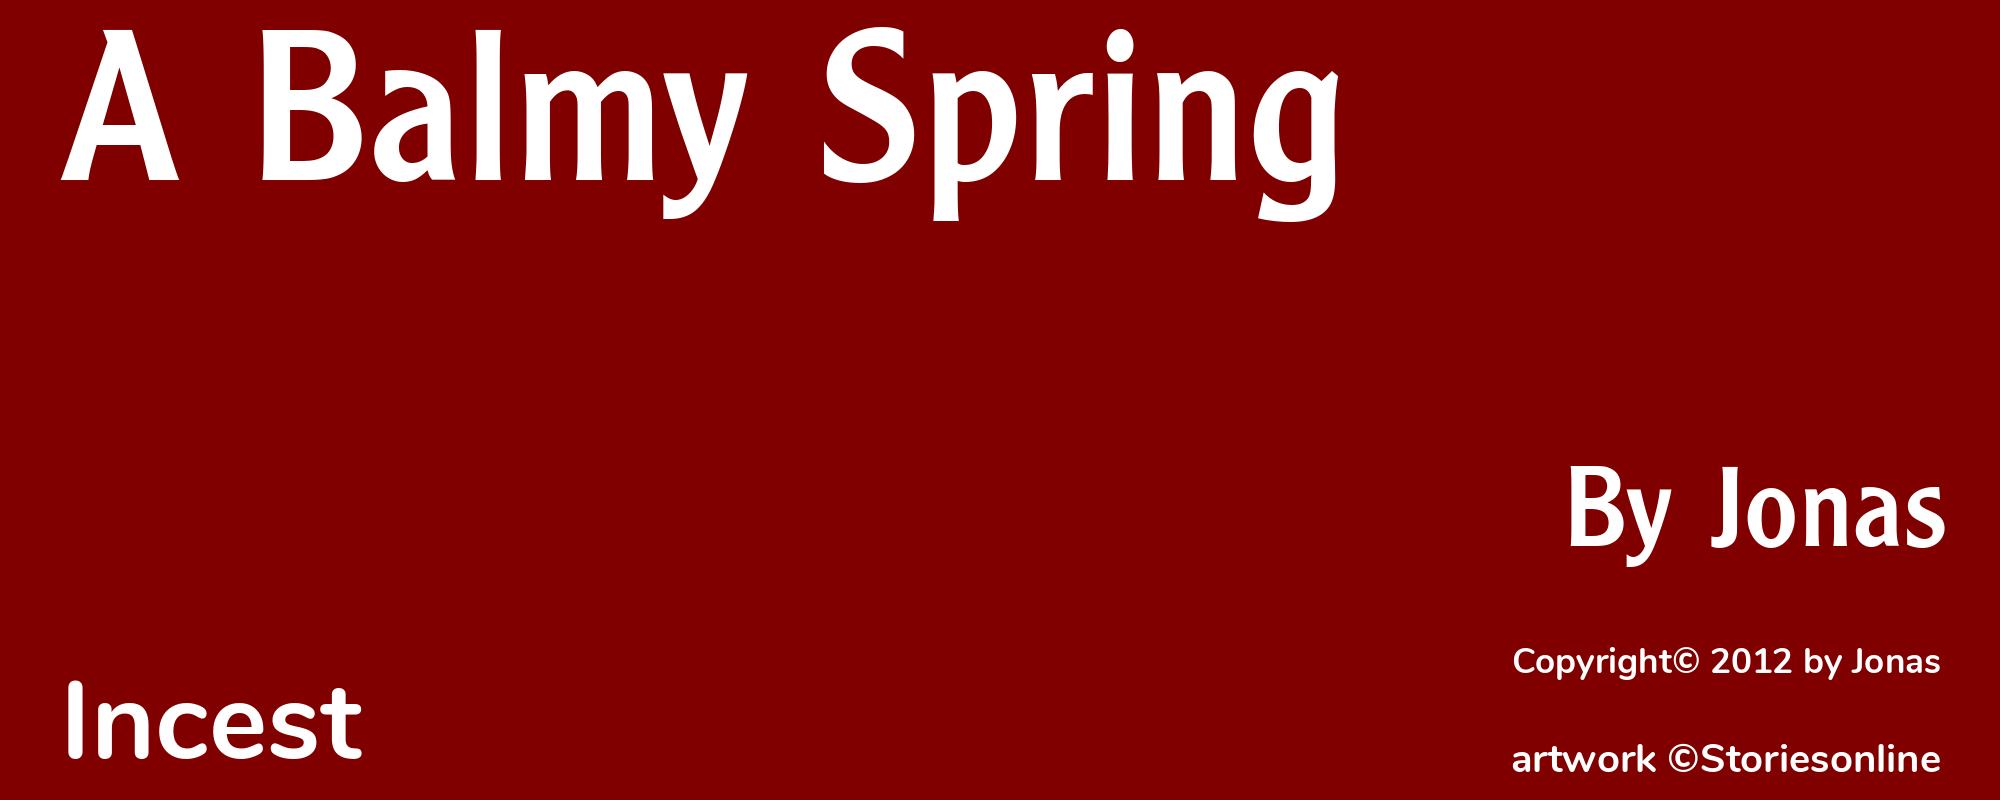 A Balmy Spring - Cover